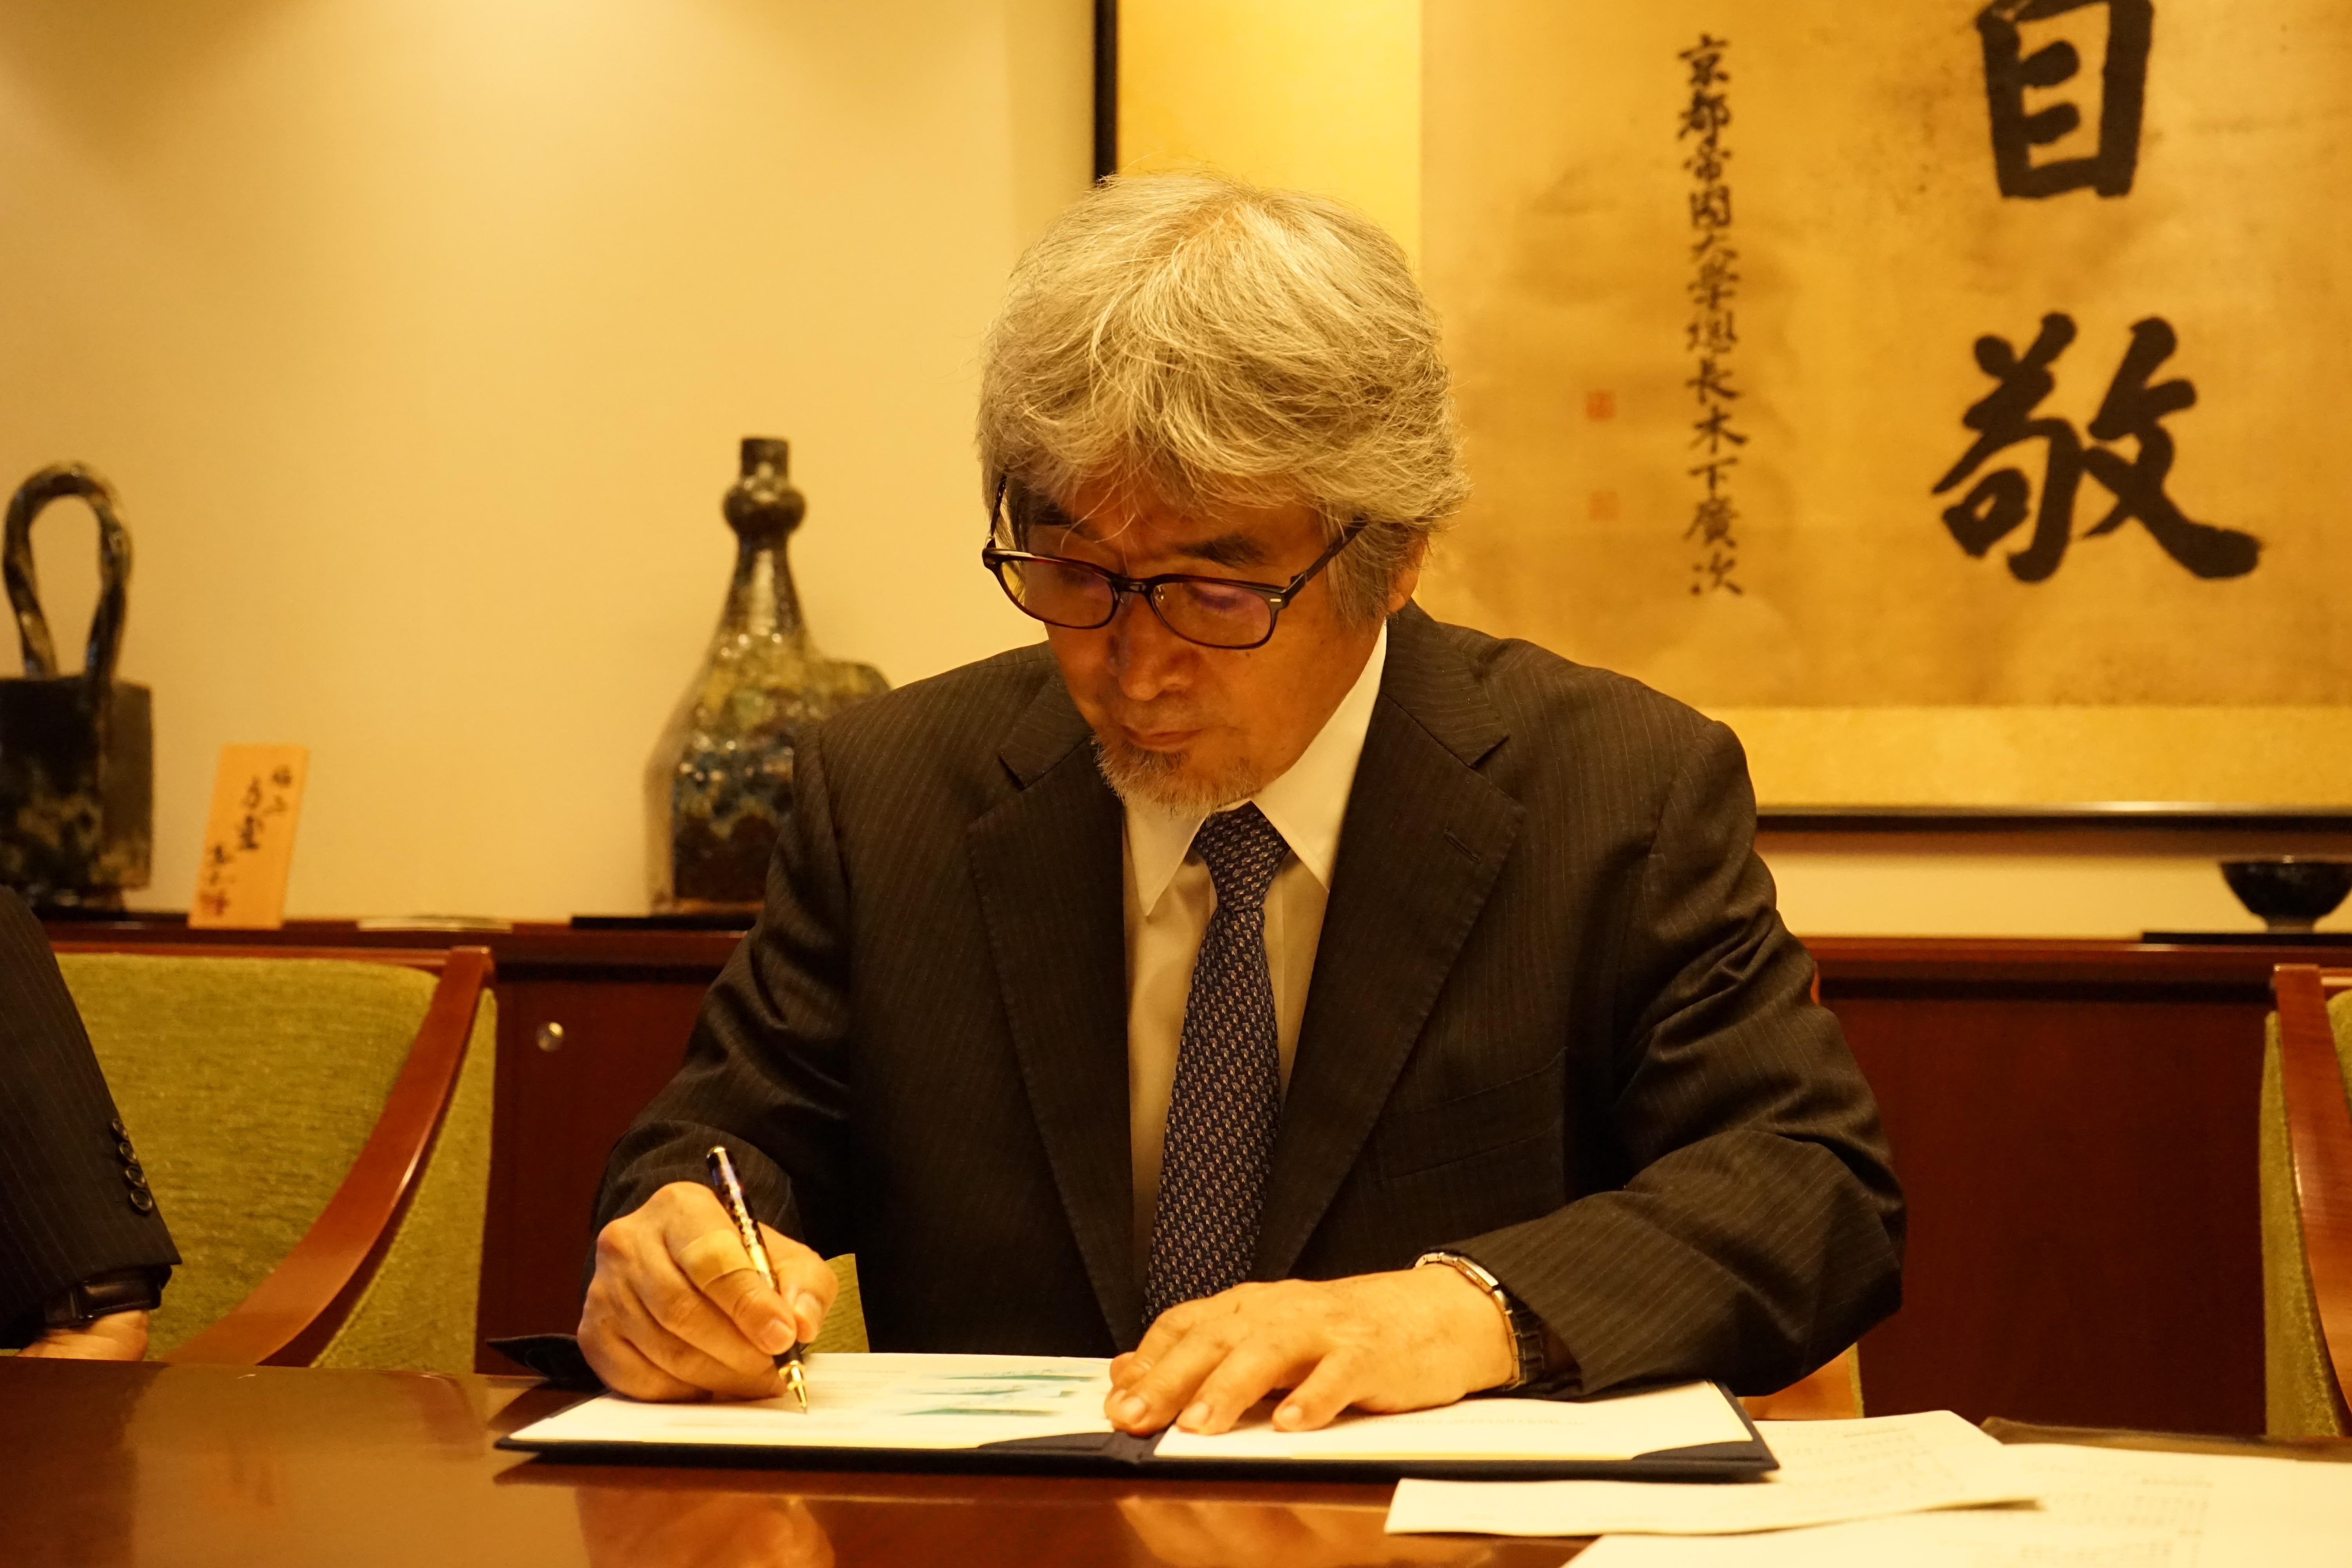 Professor Juichi Yamagiwa, President of Kyoto University